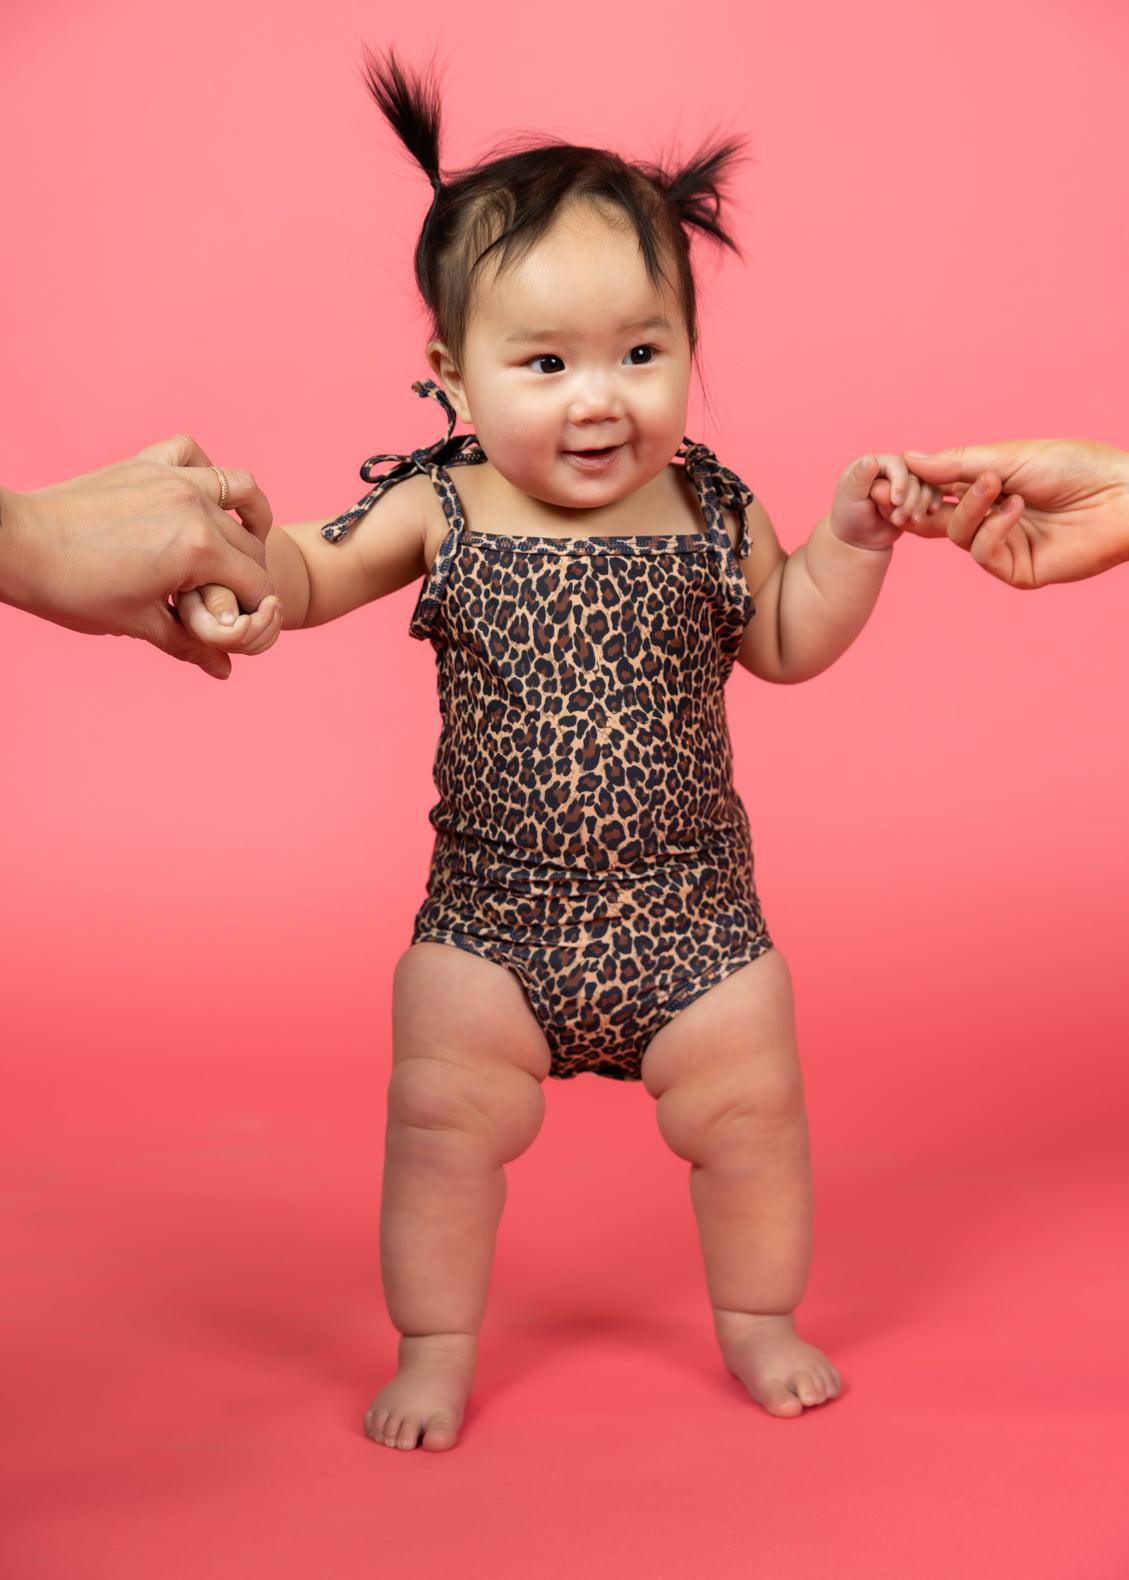 Baby Simply One-Piece | Leopard - Kortni Jeane